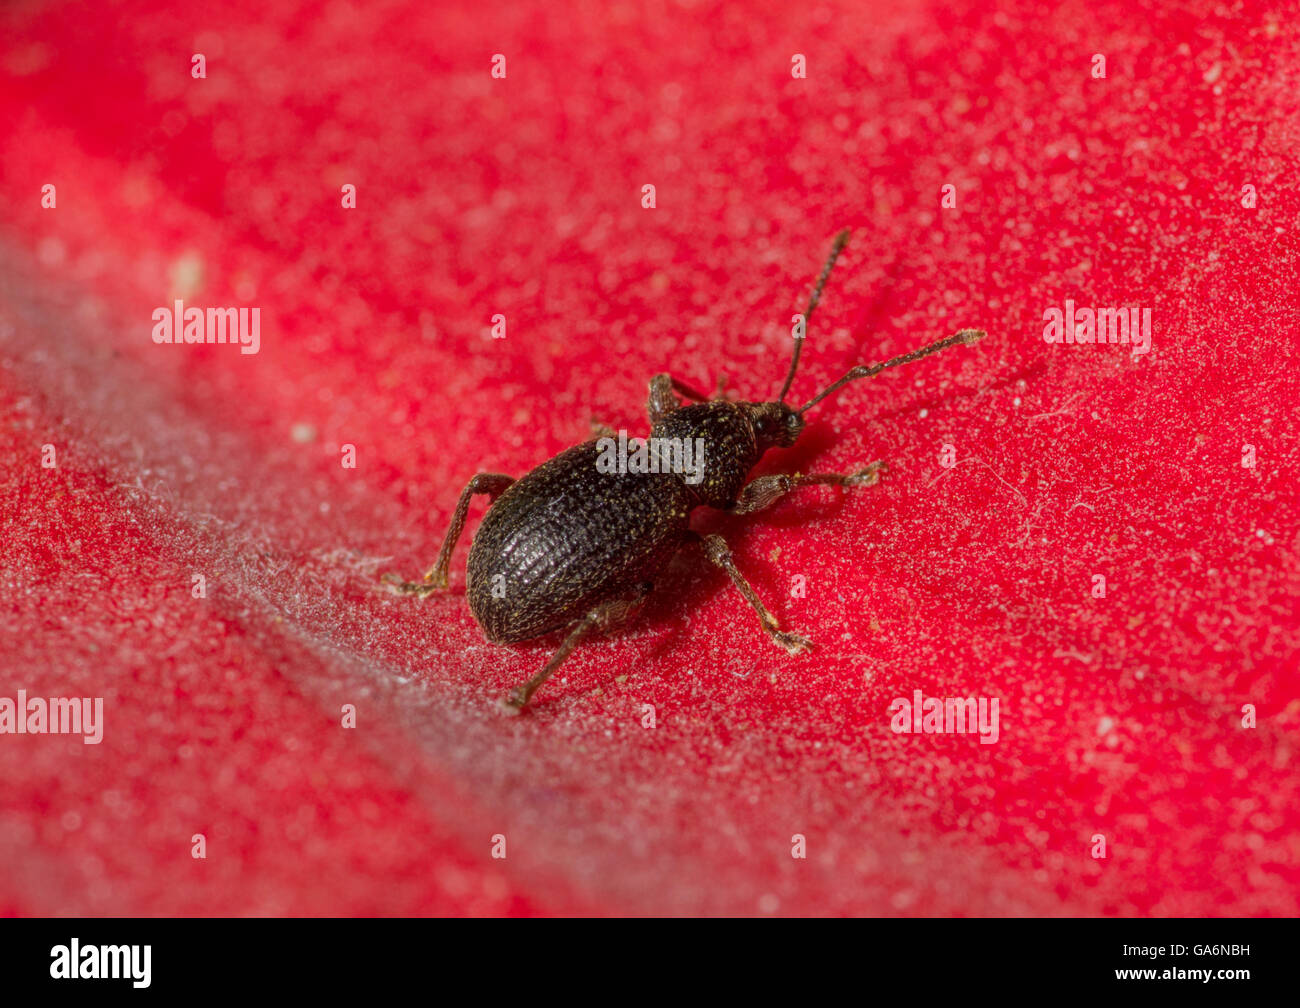 eine kleine schwarze Käfer kriechen auf eine rote Blütenblatt-Pflanzen  Stockfotografie - Alamy